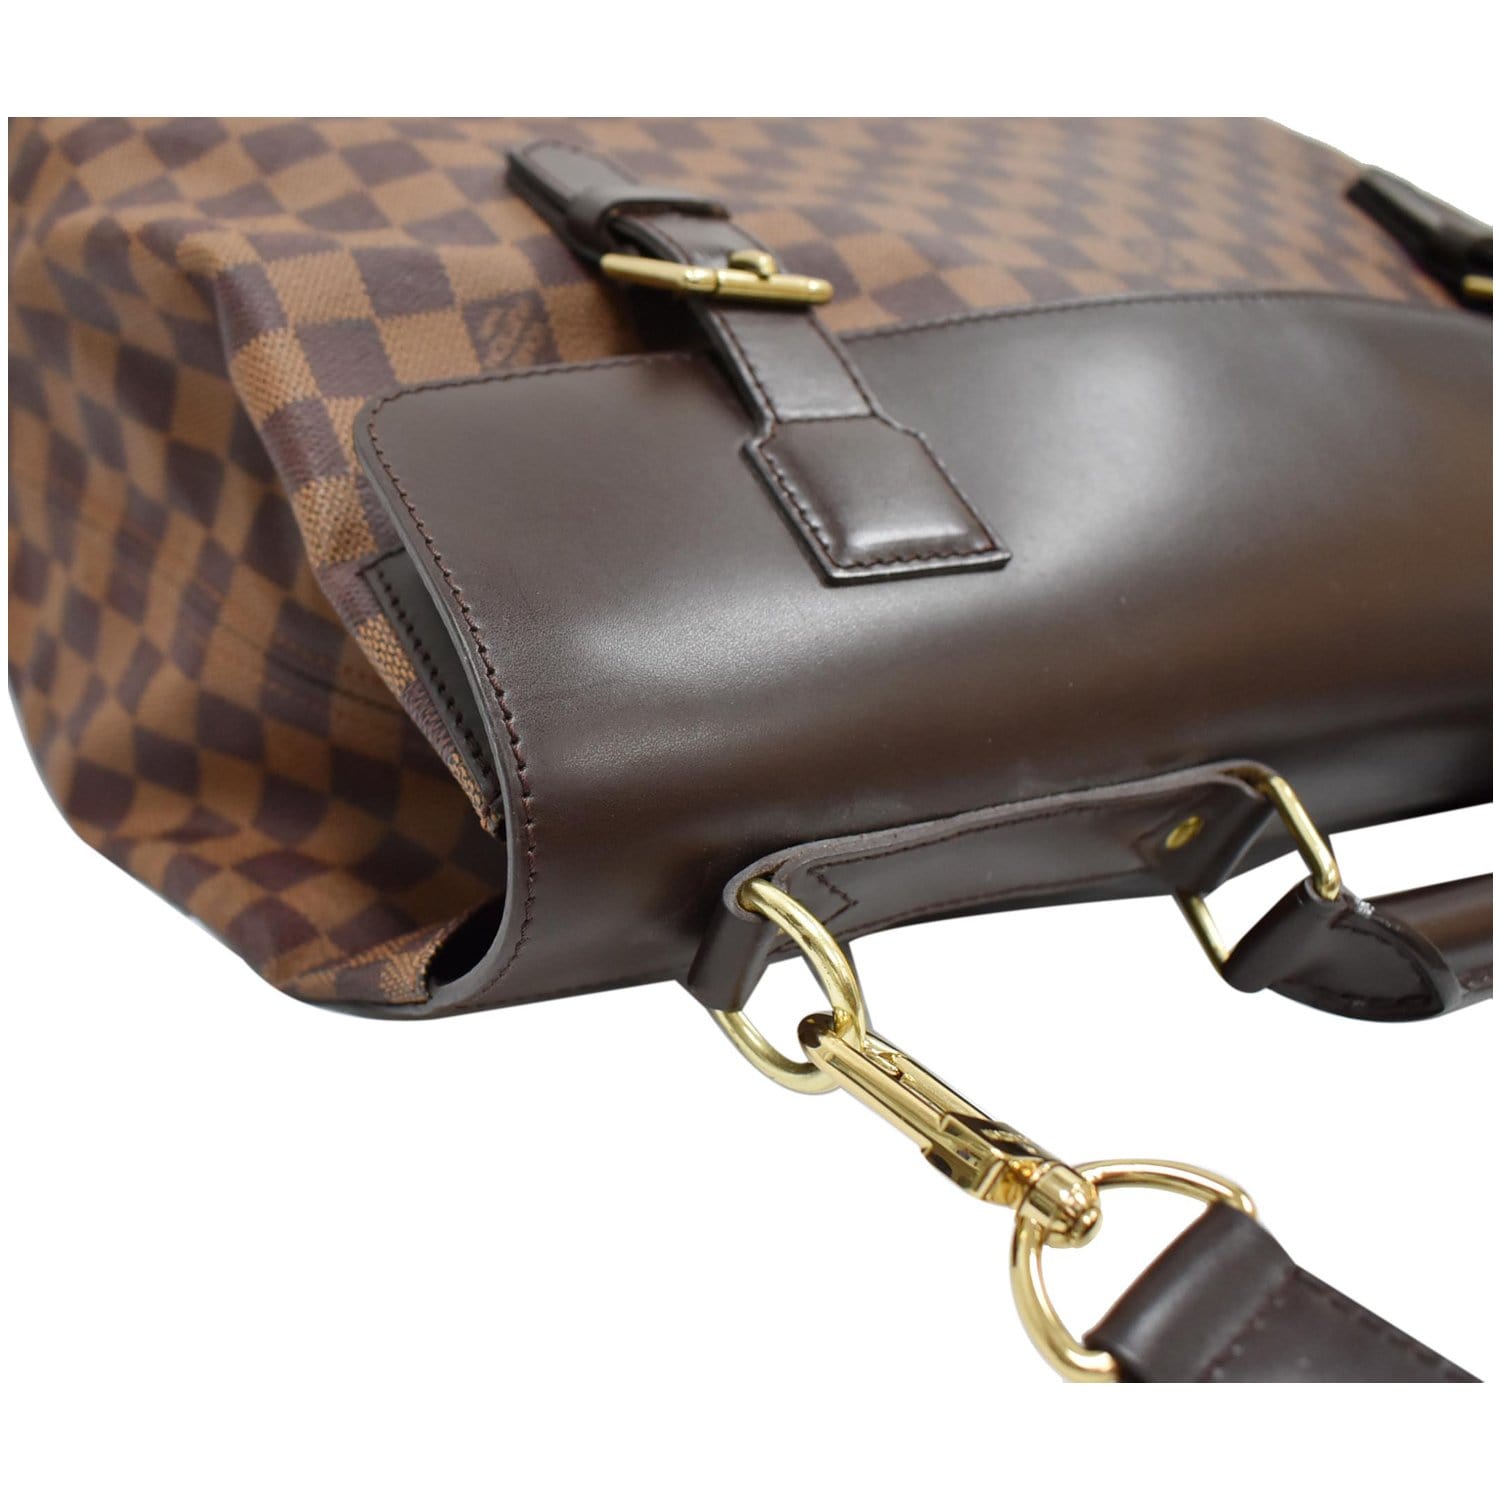 Louis Vuitton Damier Ebene Canvas Shoulder Bag on SALE